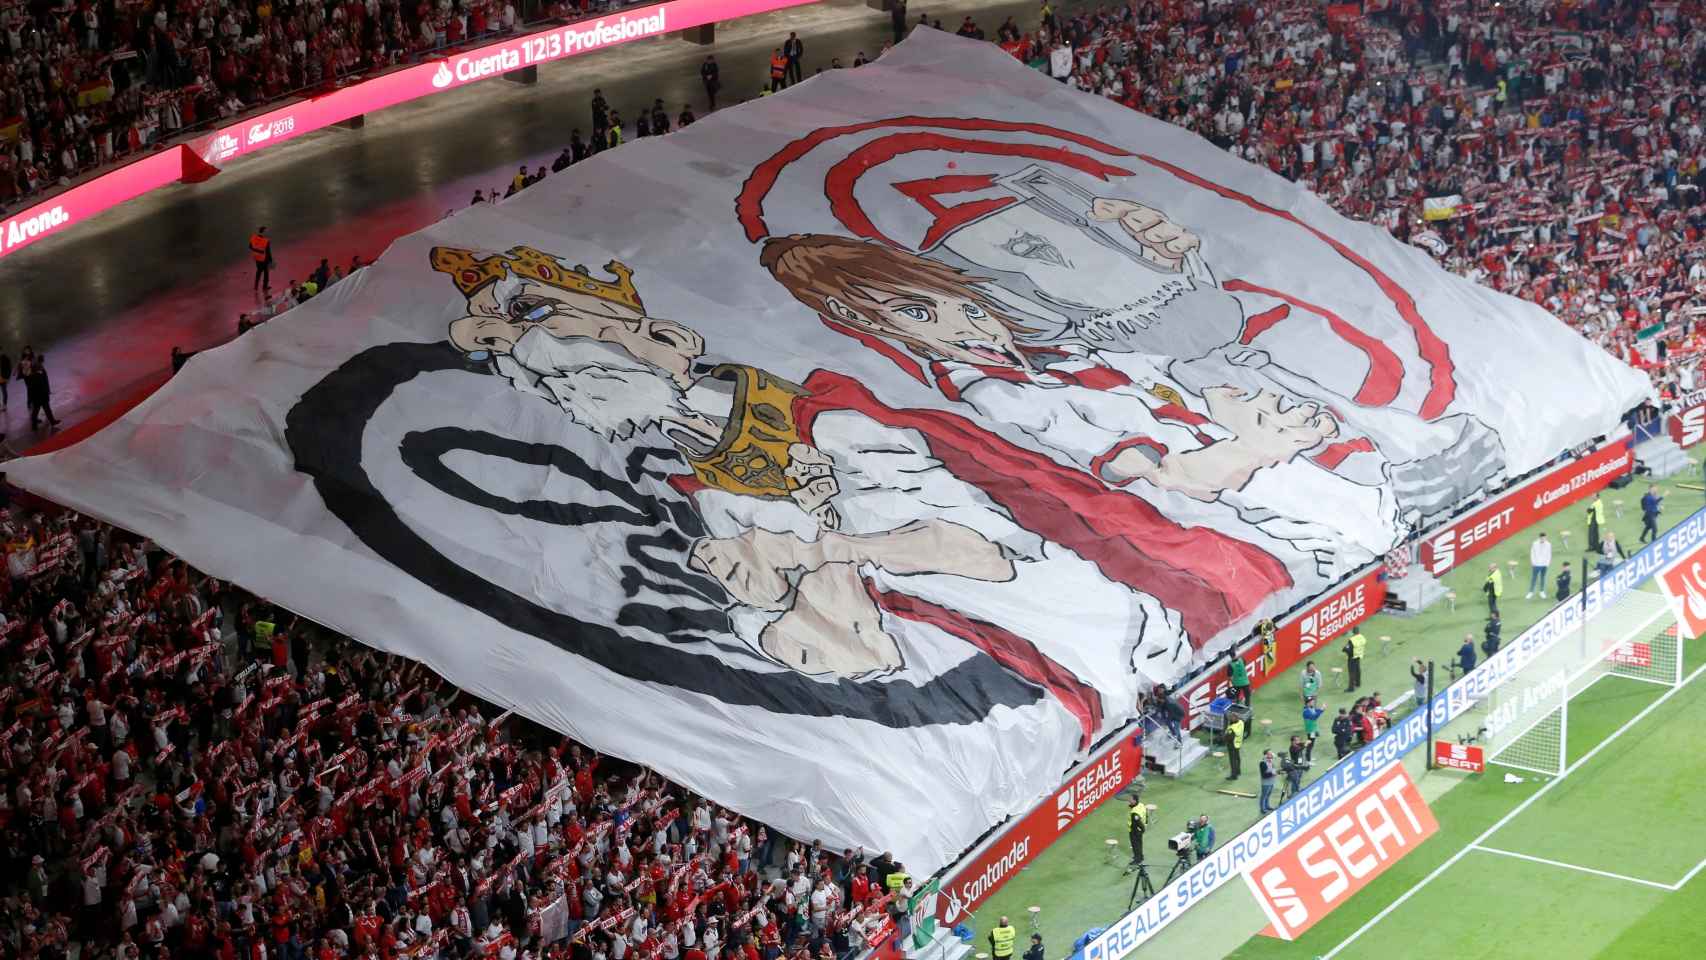 El tifo que la afición del Sevilla mostró en el Wanda Metropolitano.